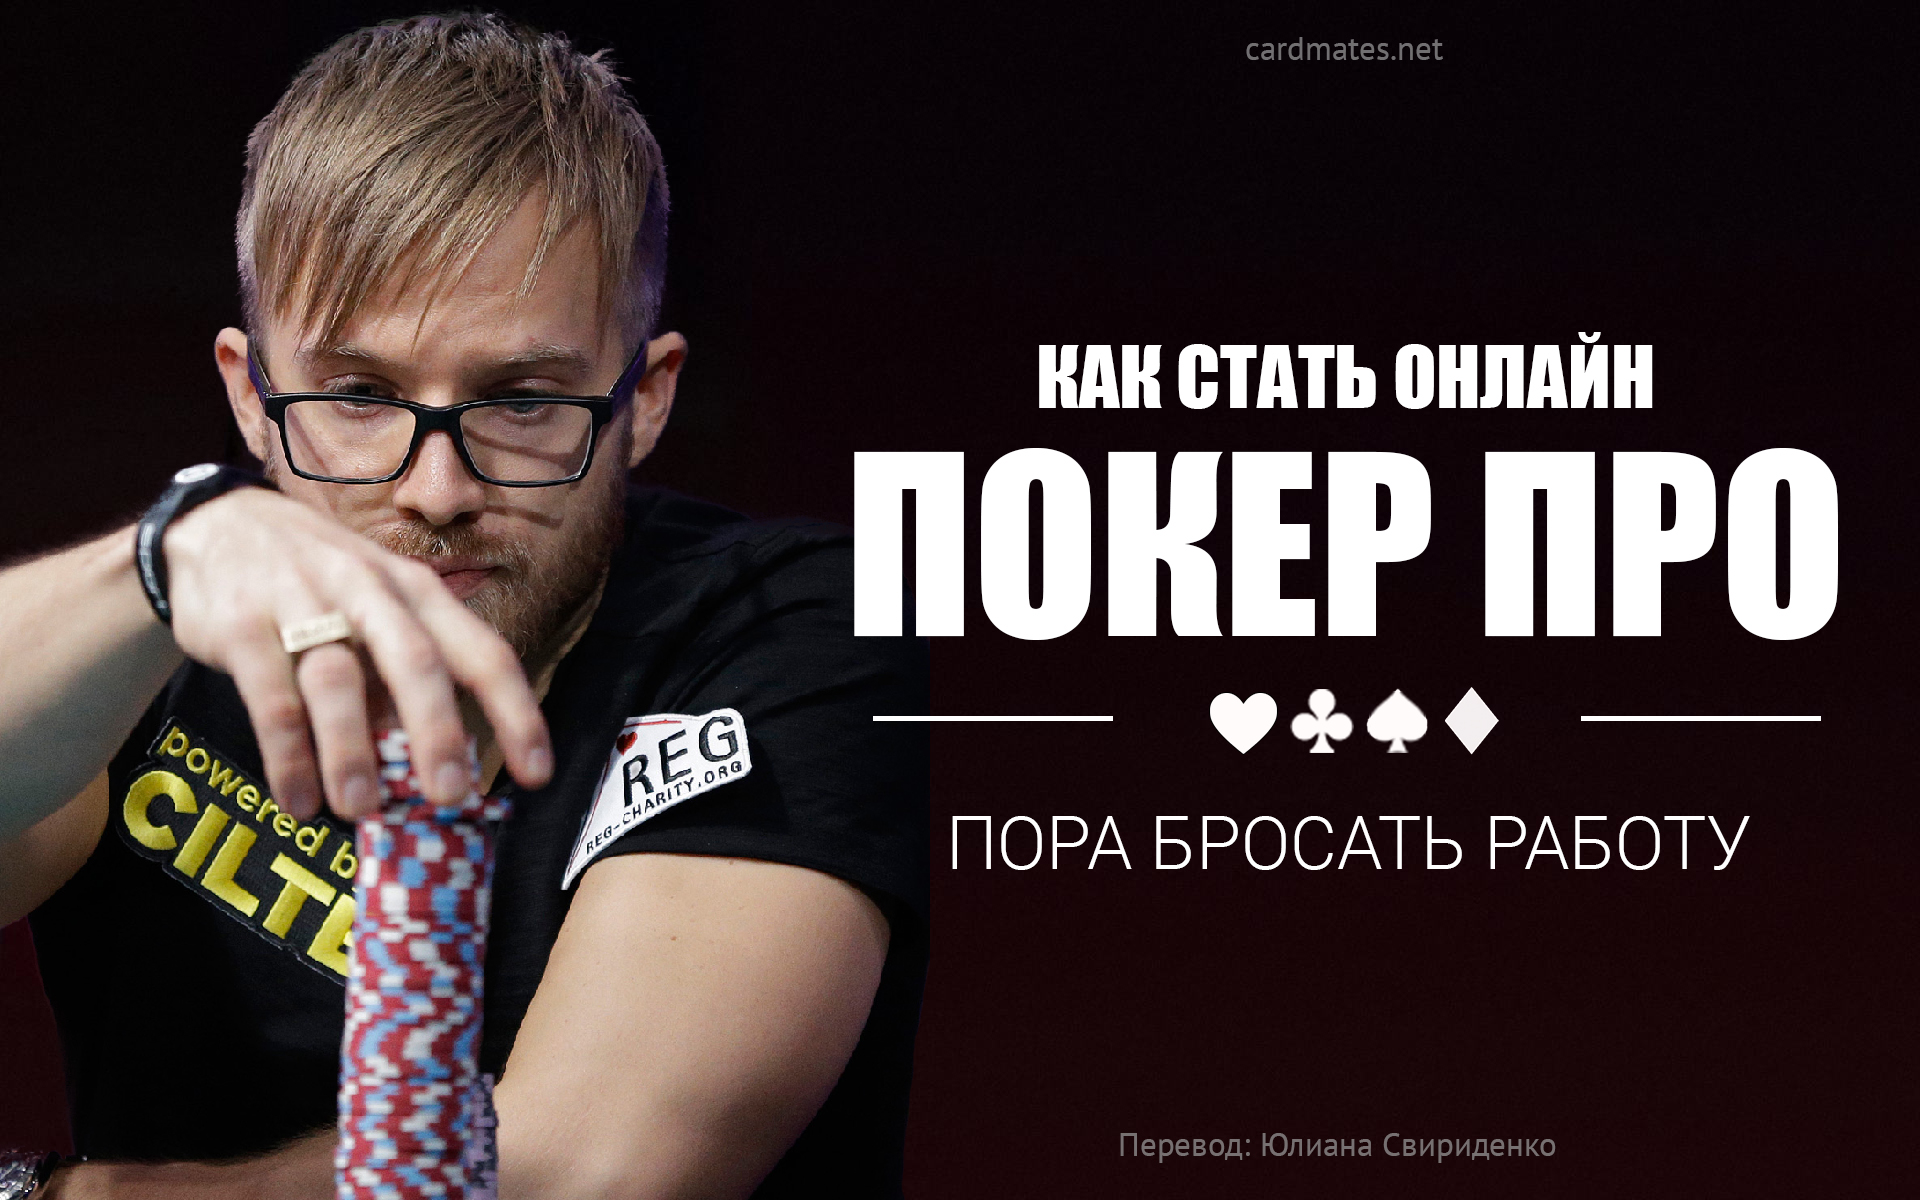 Работа в покере онлайн король покера 2 играть онлайн на русском языке полная версия